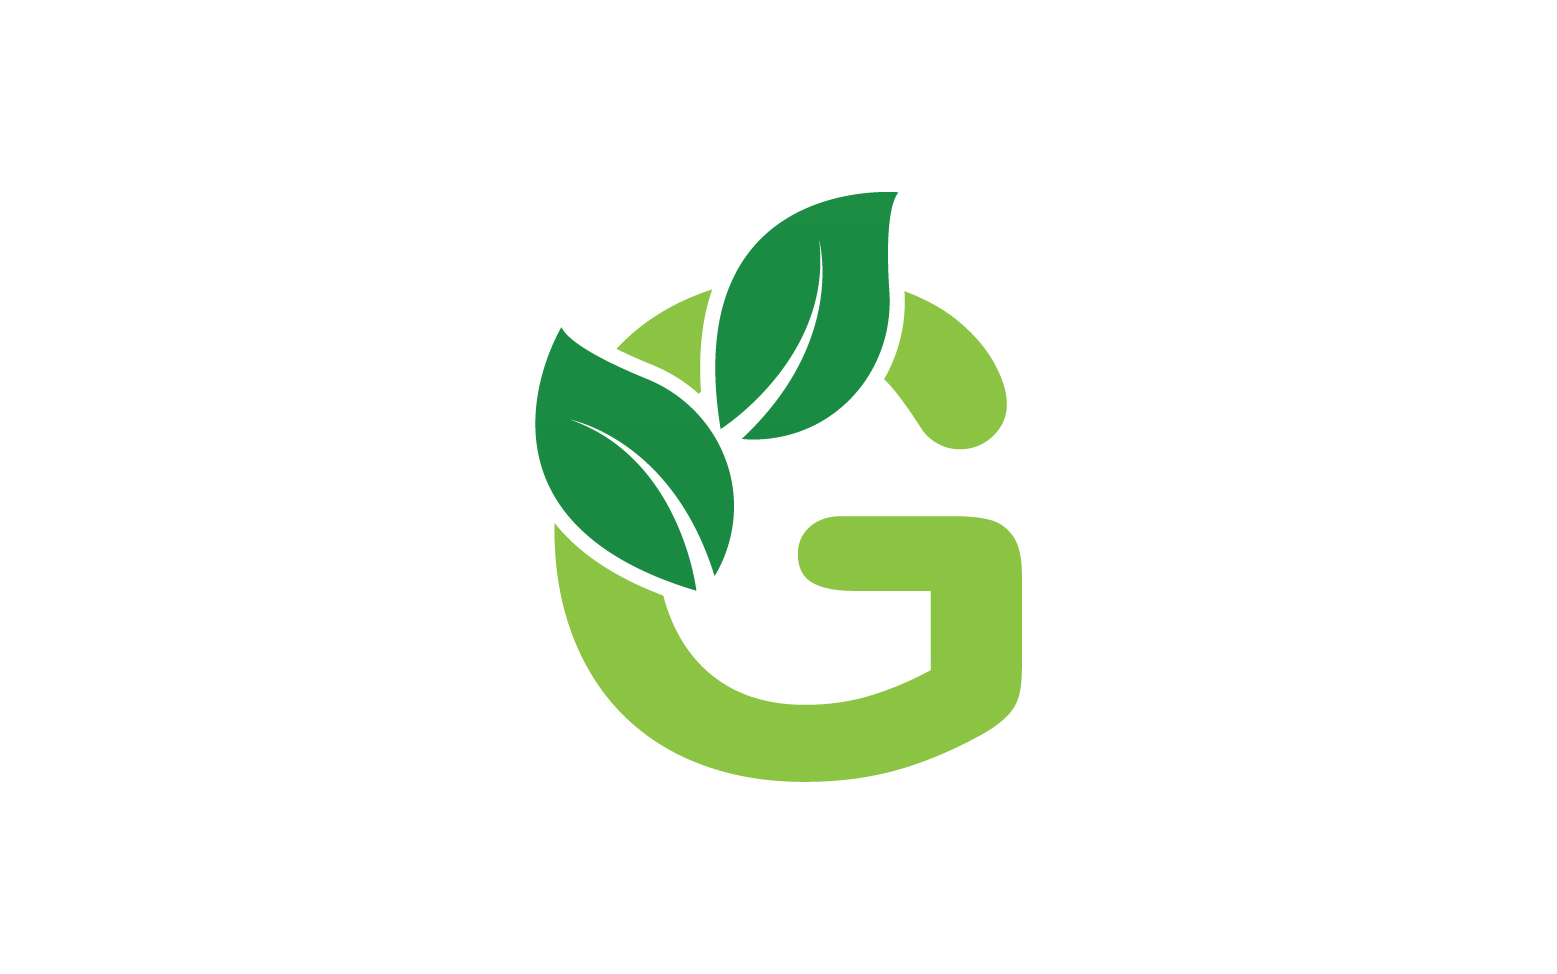 G letter leaf green logo icon version v51